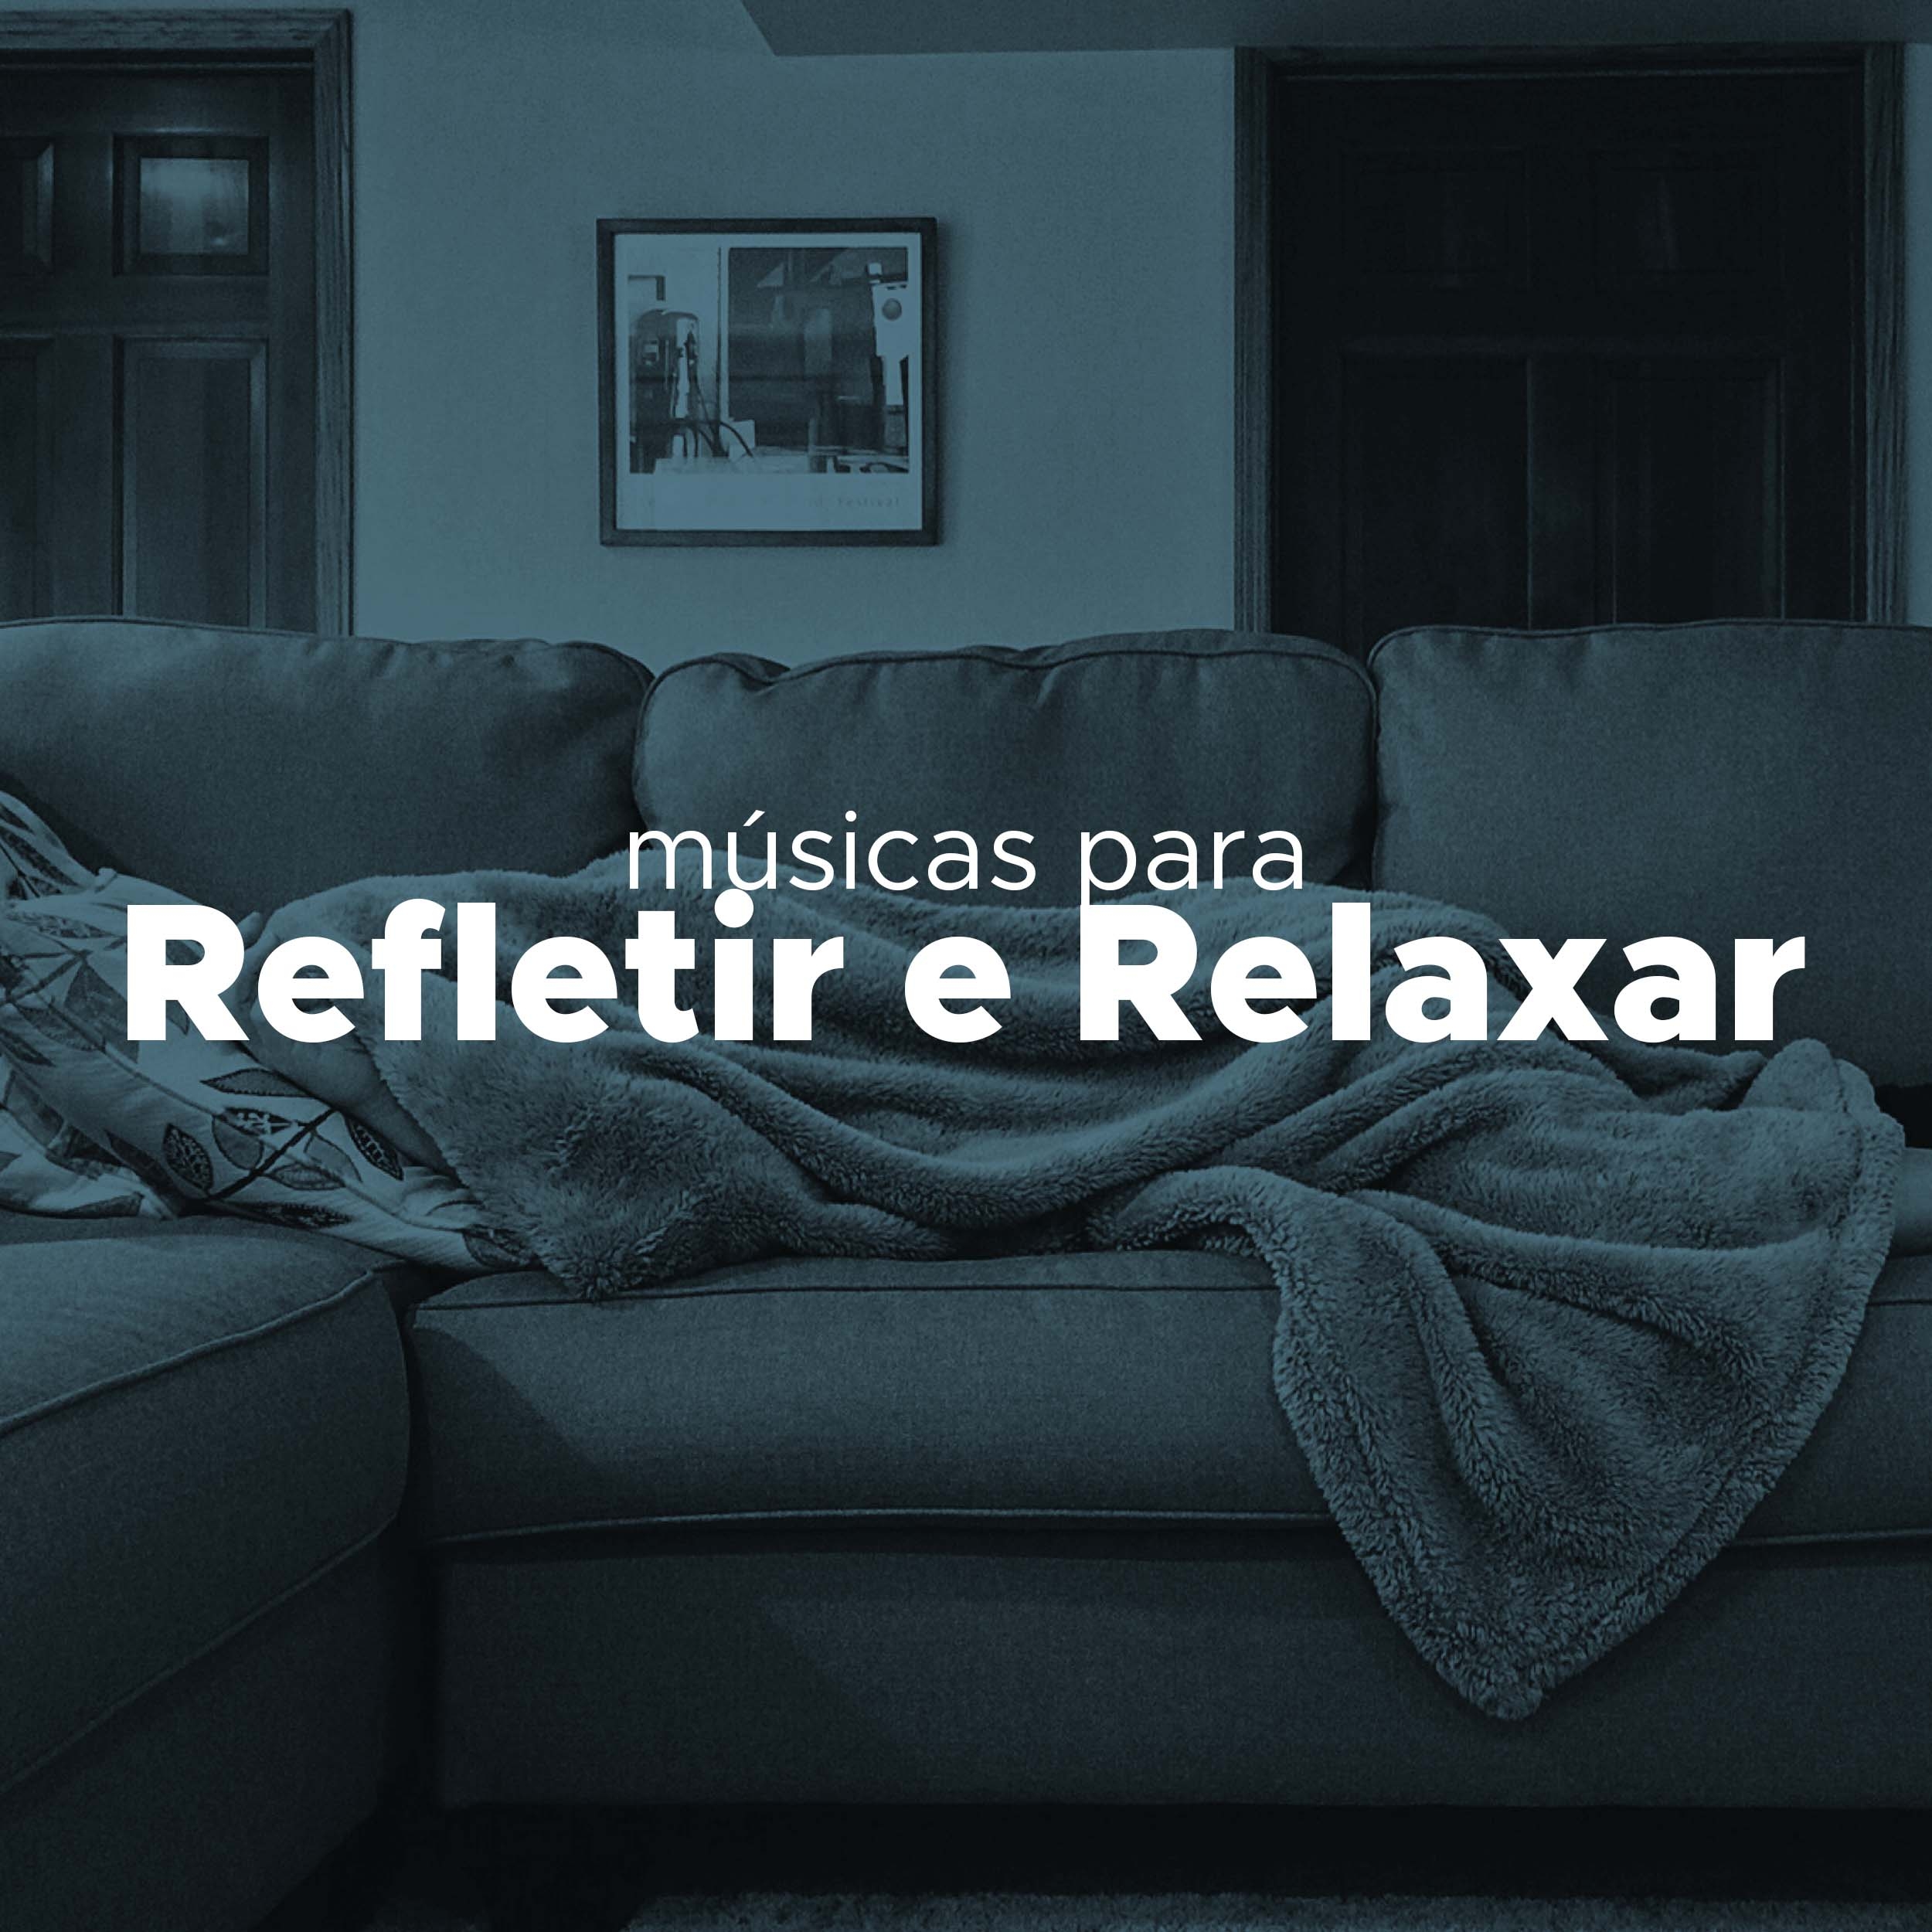 Musicas para Refletir E Relaxar - Exercício de Relaxamento